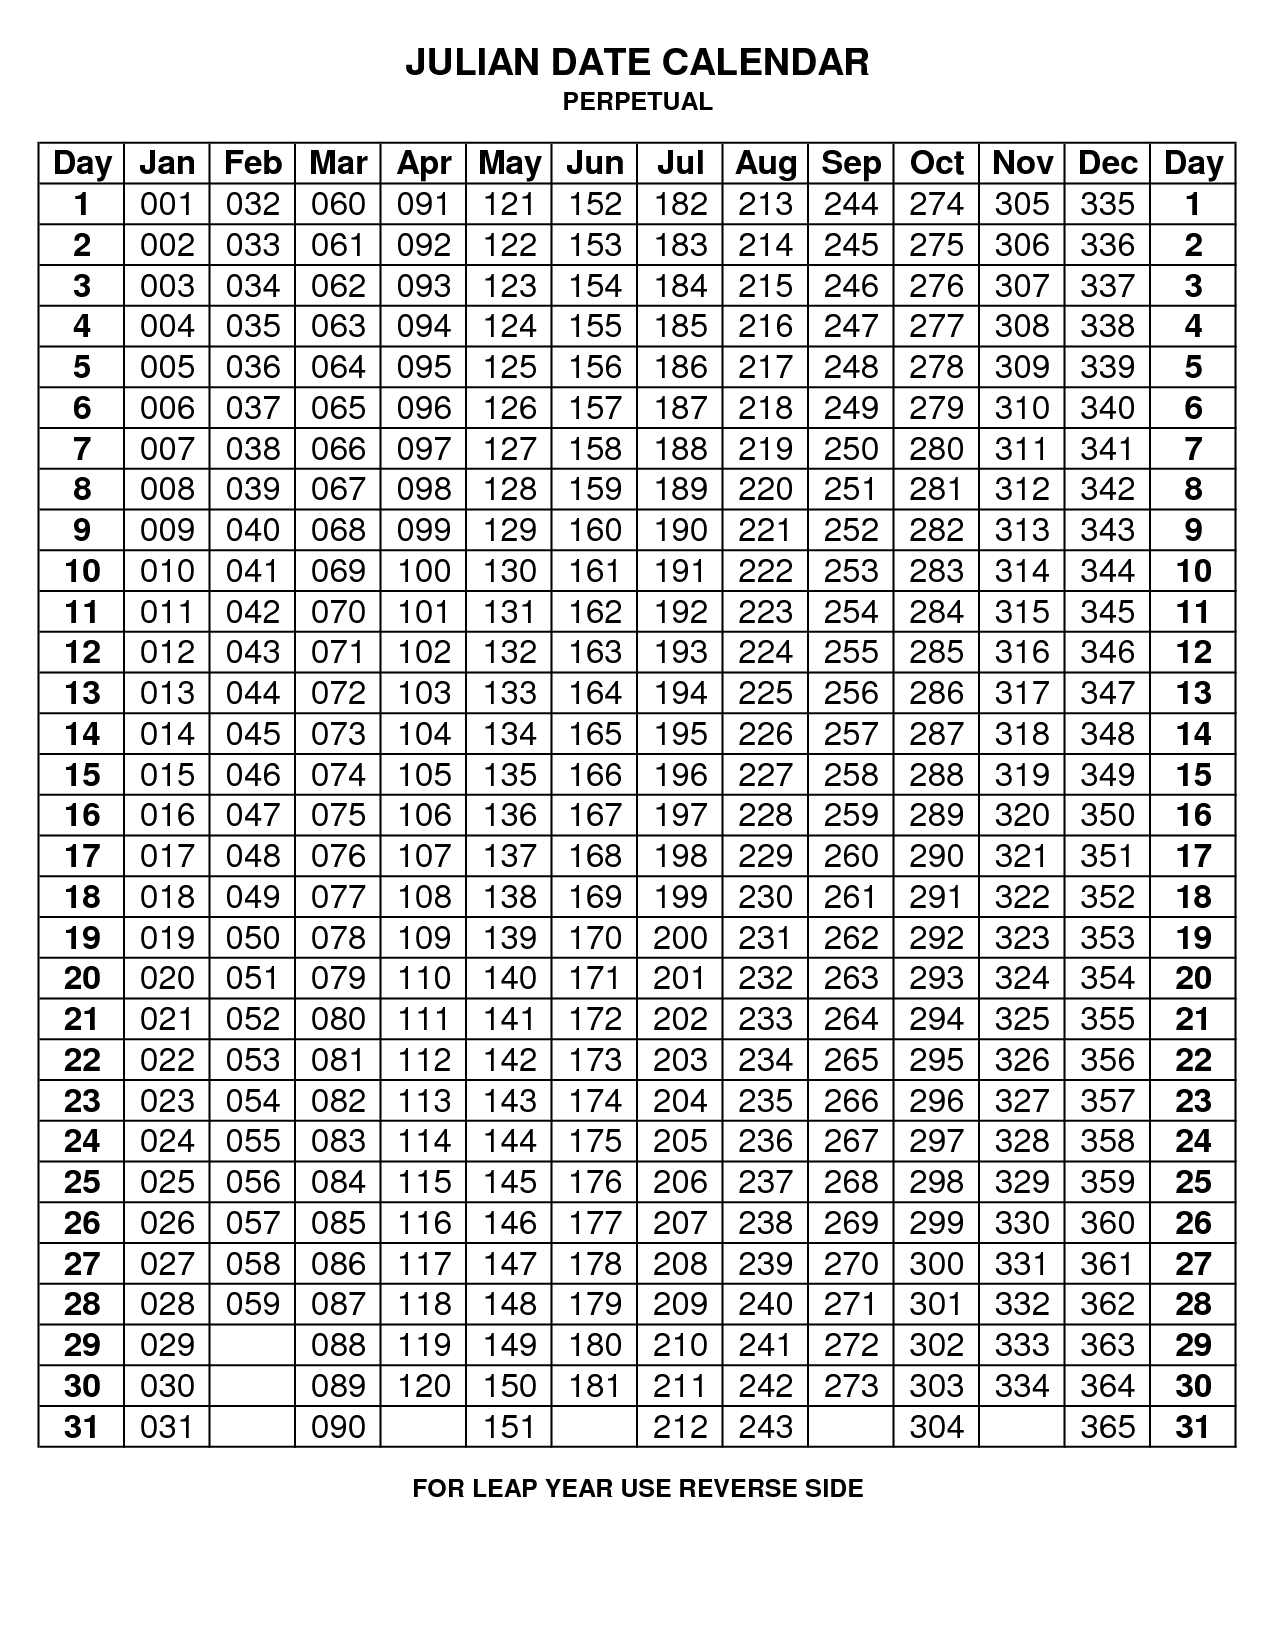 Julian Date Calendar 2021 Converter | Printable Calendar Julian Date 2021